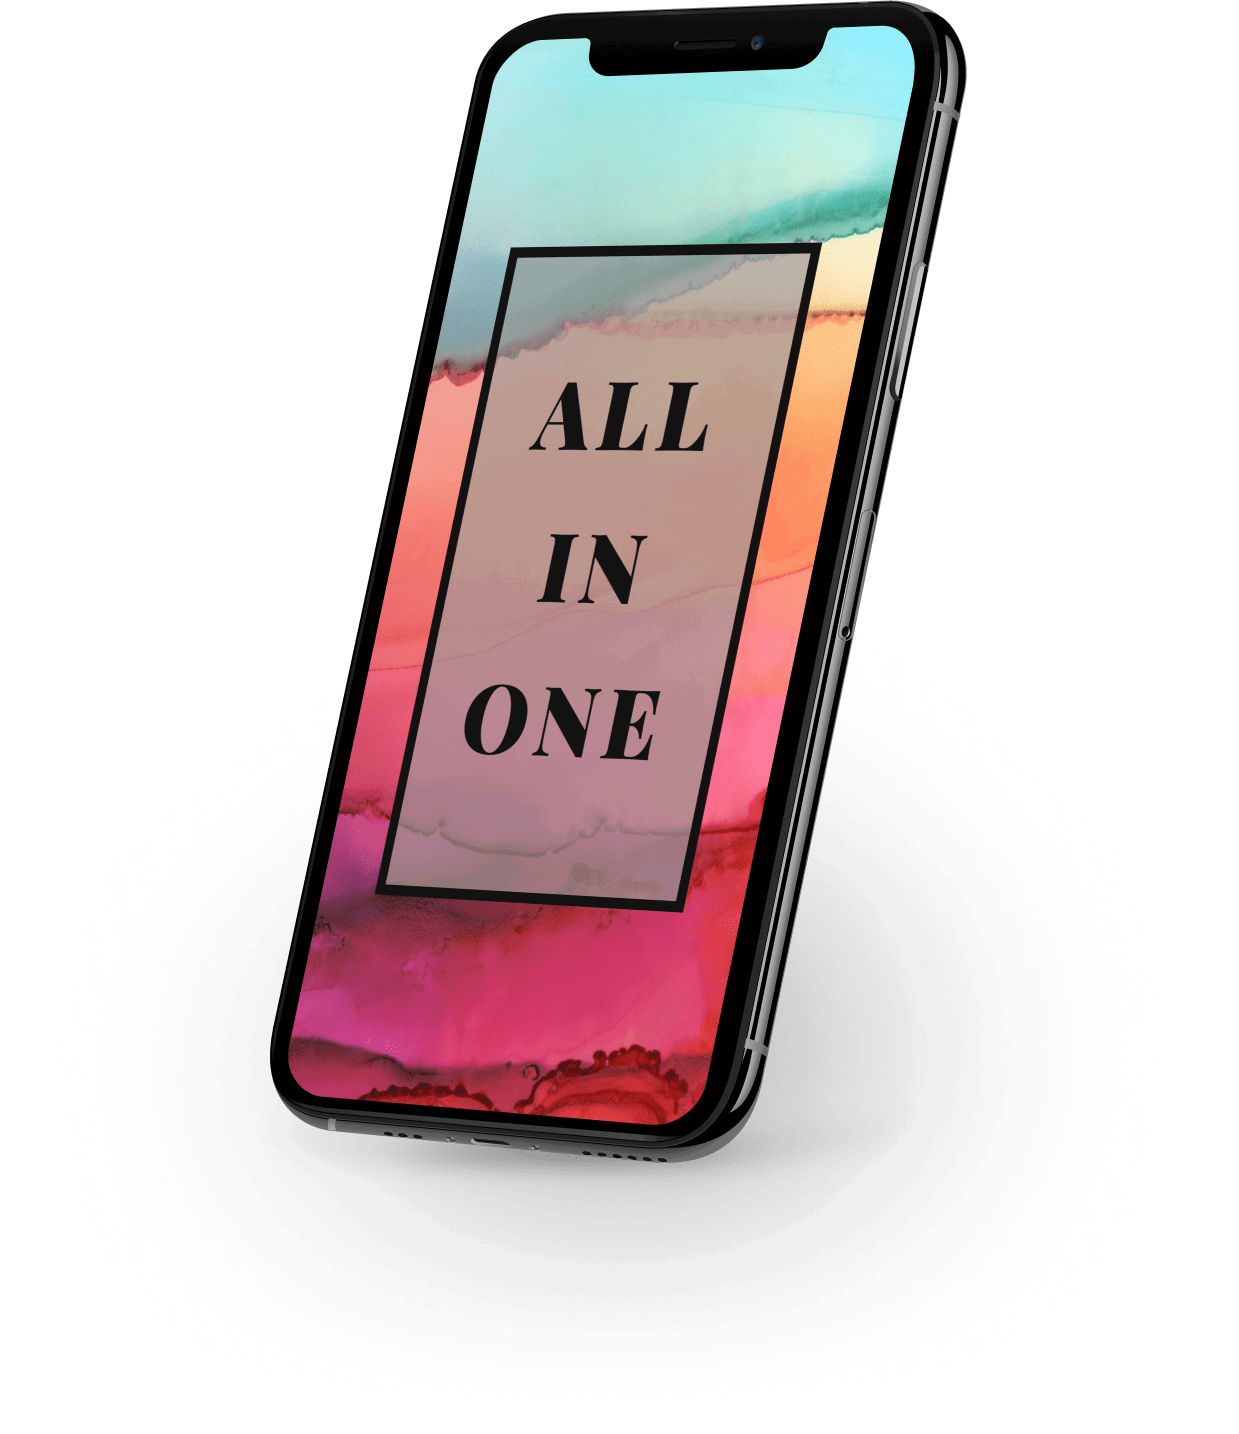 Mobiltelefon mit dem Spruch "All in one" und buntem Hintergrund am Display